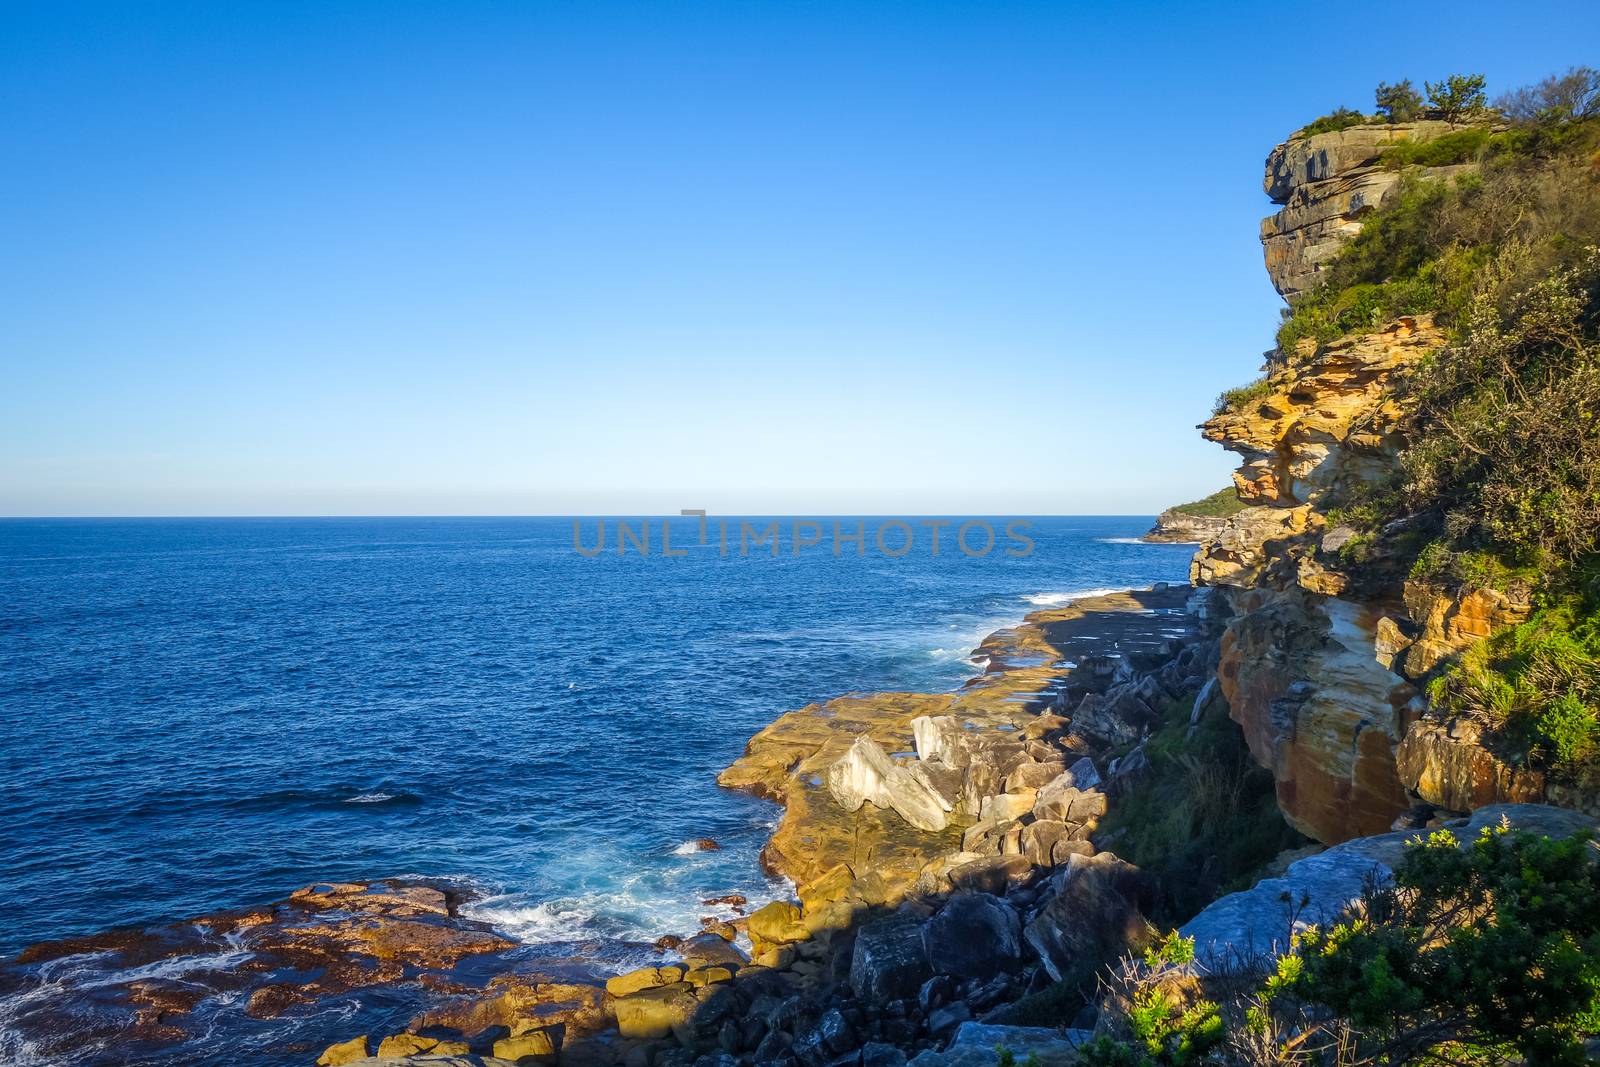 Manly Beach coastal cliffs, Sydney, Australia by daboost